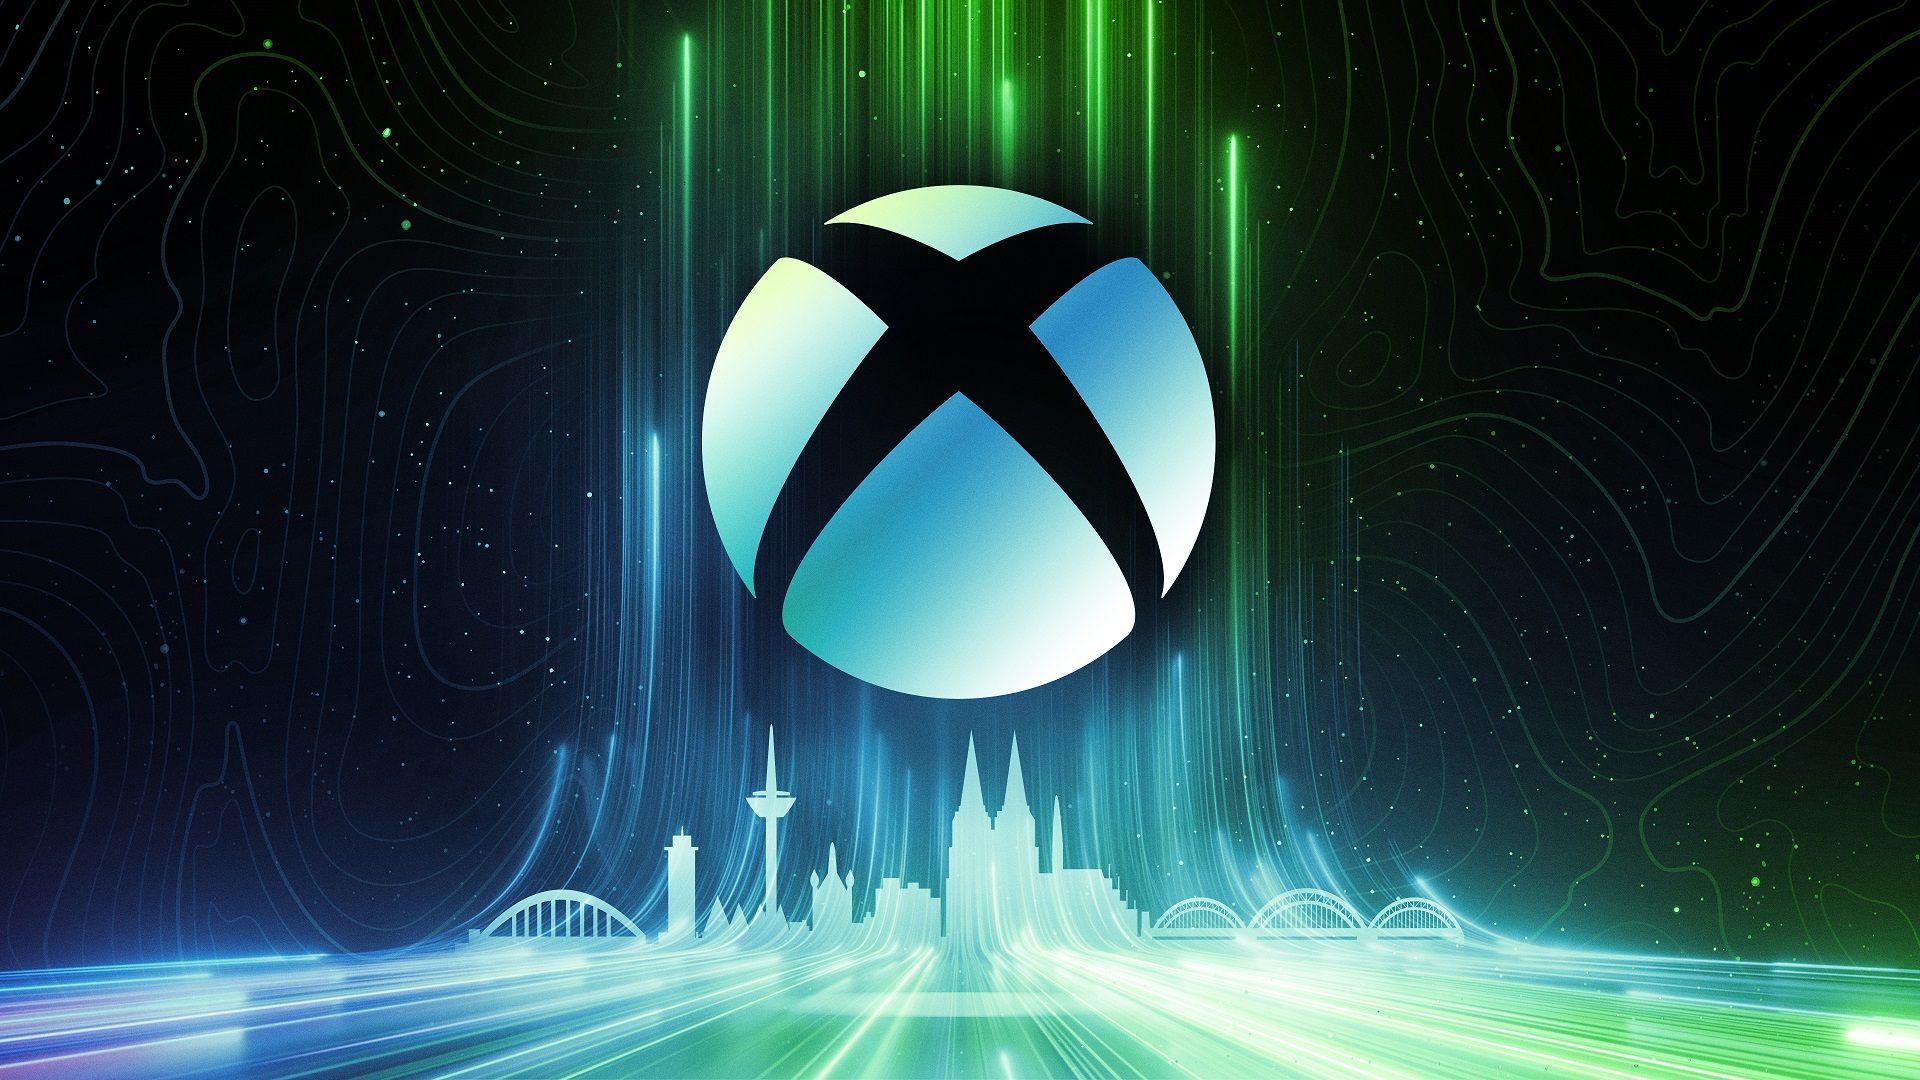 Konsola Xbox Handheld to urządzenie z rodziny Xbox, które może zostać ogłoszone już wkrótce